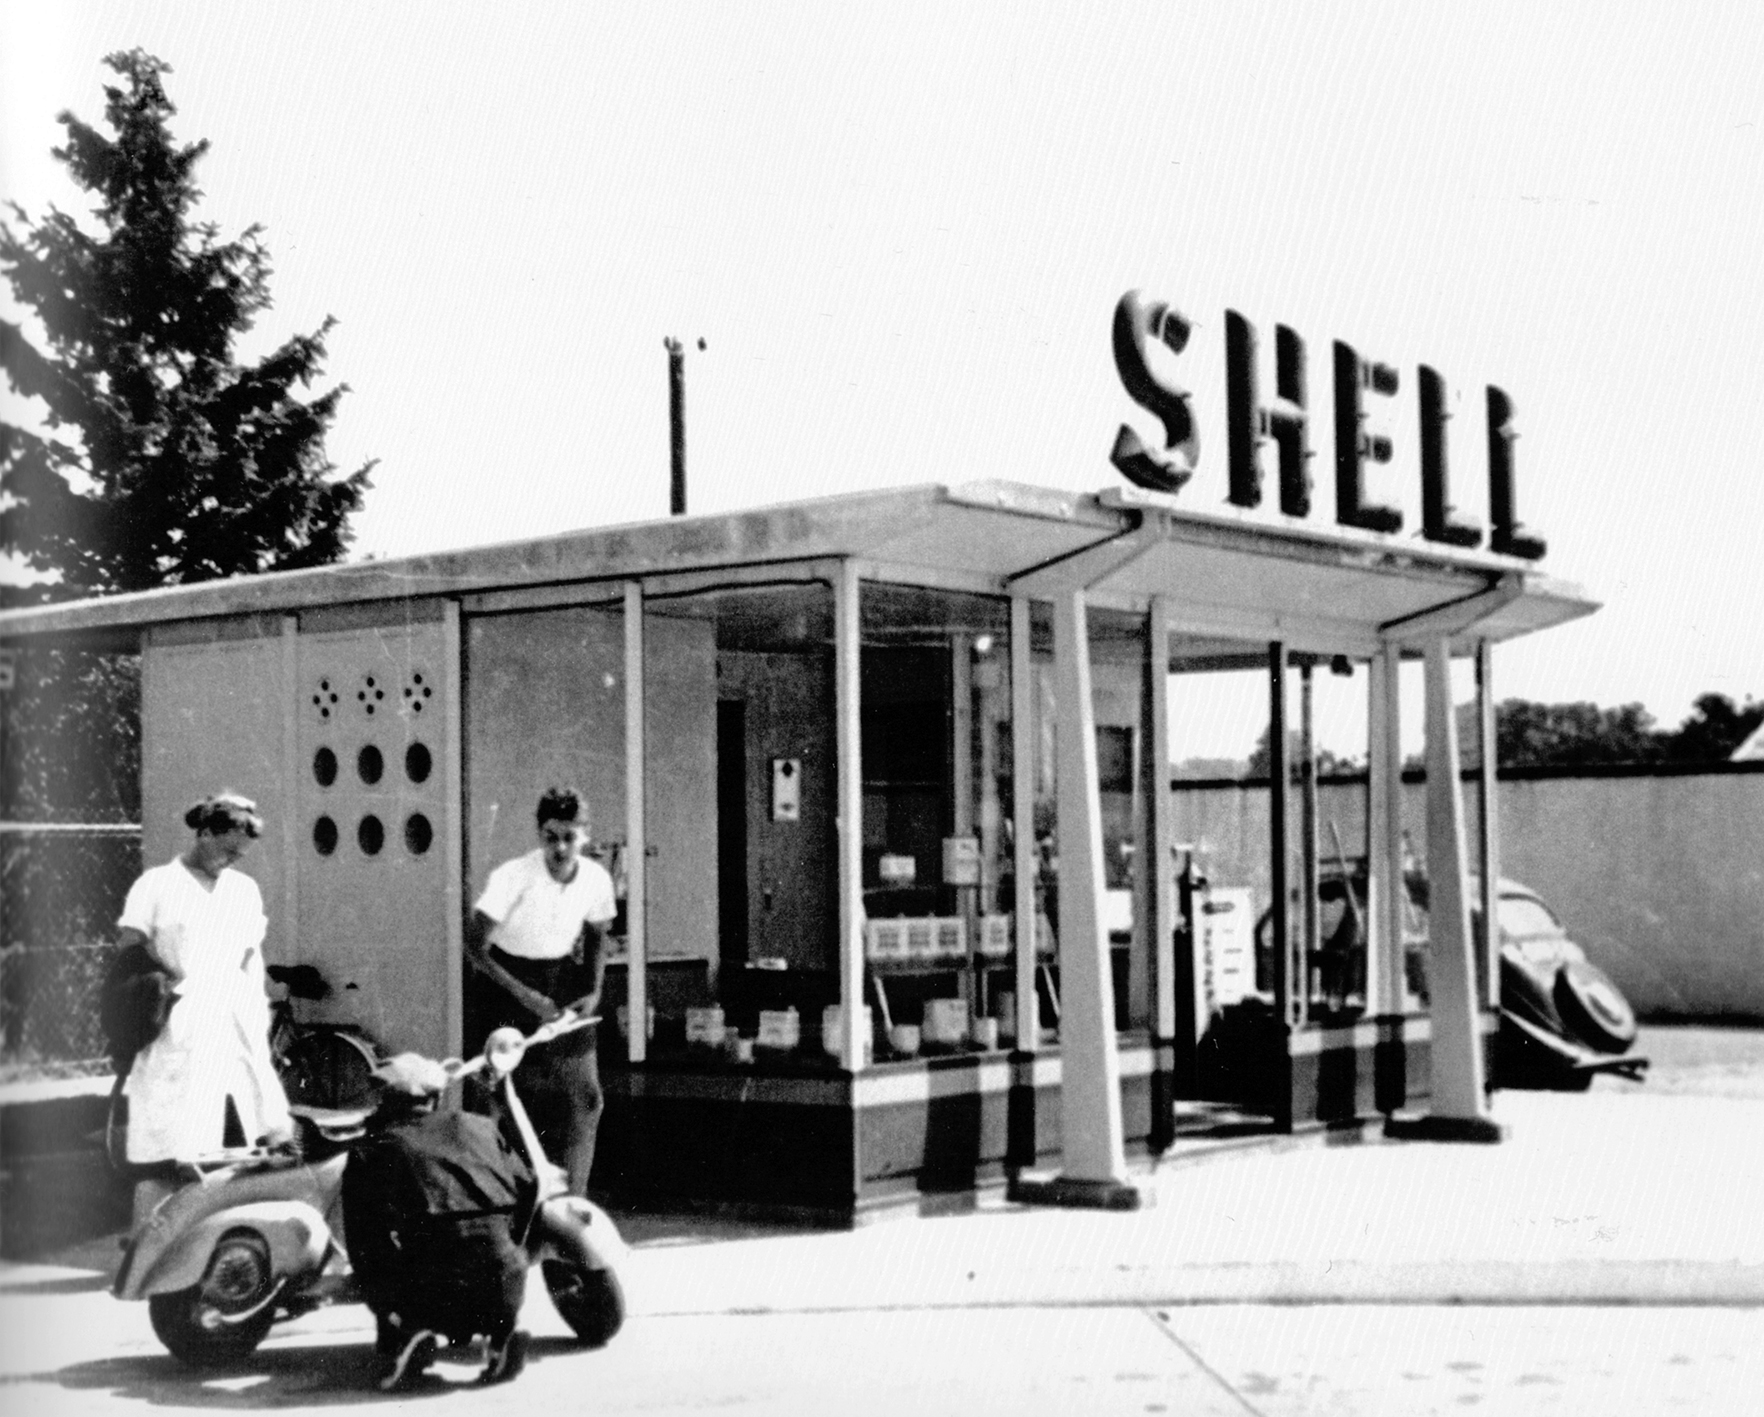 Shell filling station (Henri Prouvé, architect). Location unknown, 1951.